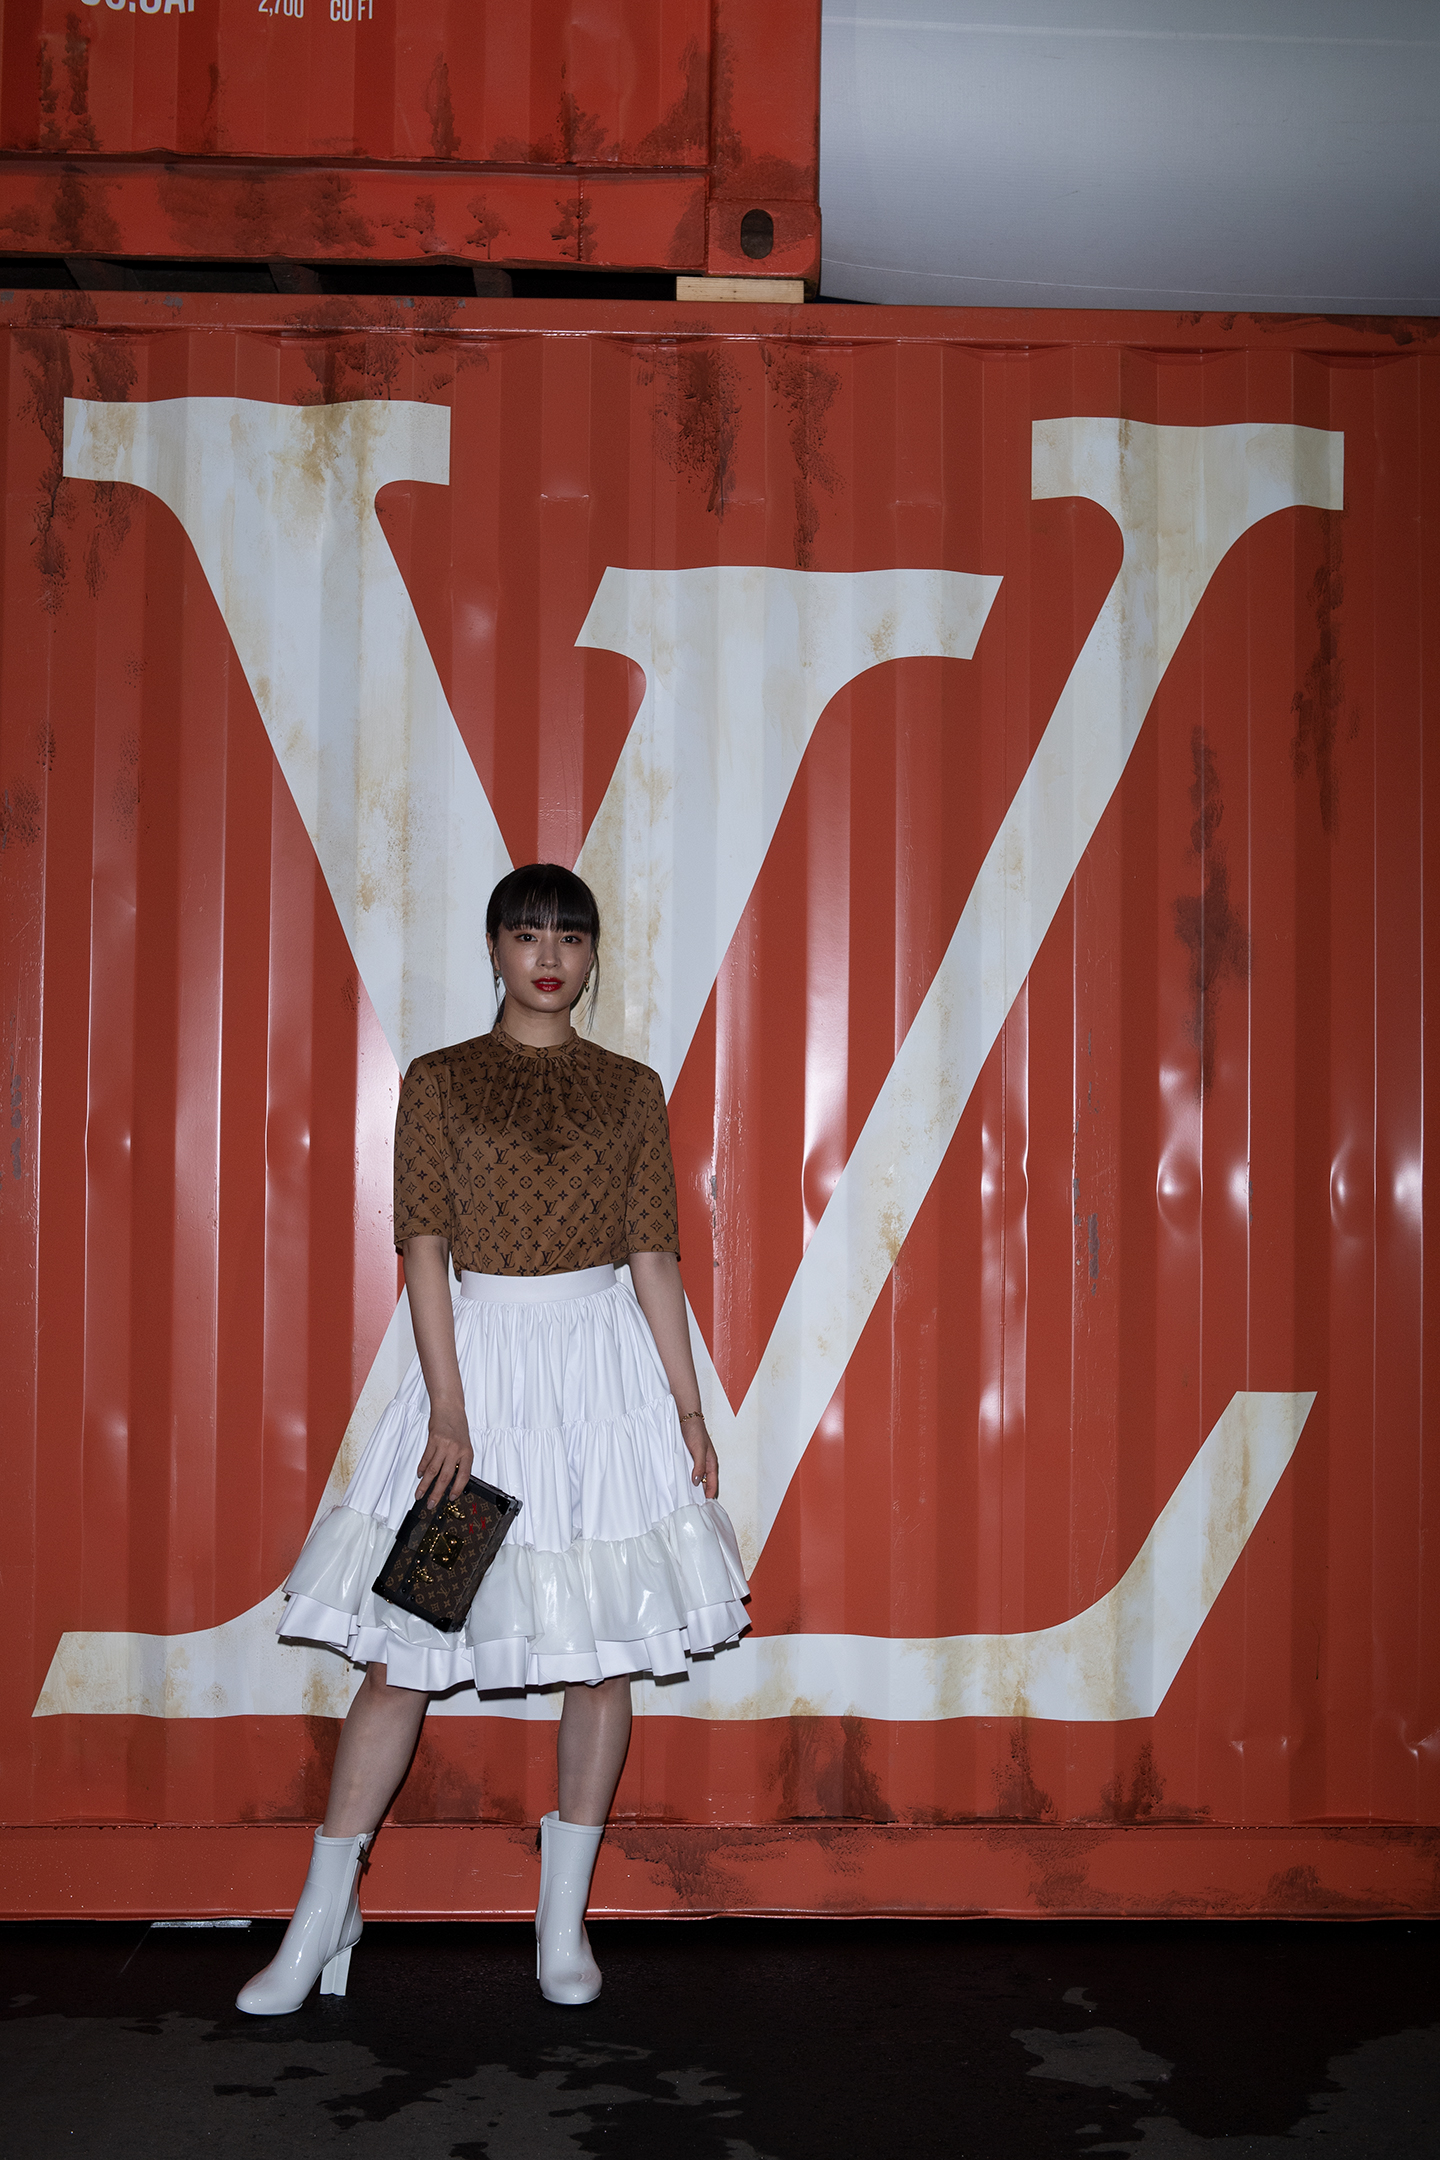 Virgil Abloh celebrates 'black imagination' for Louis Vuitton SS21